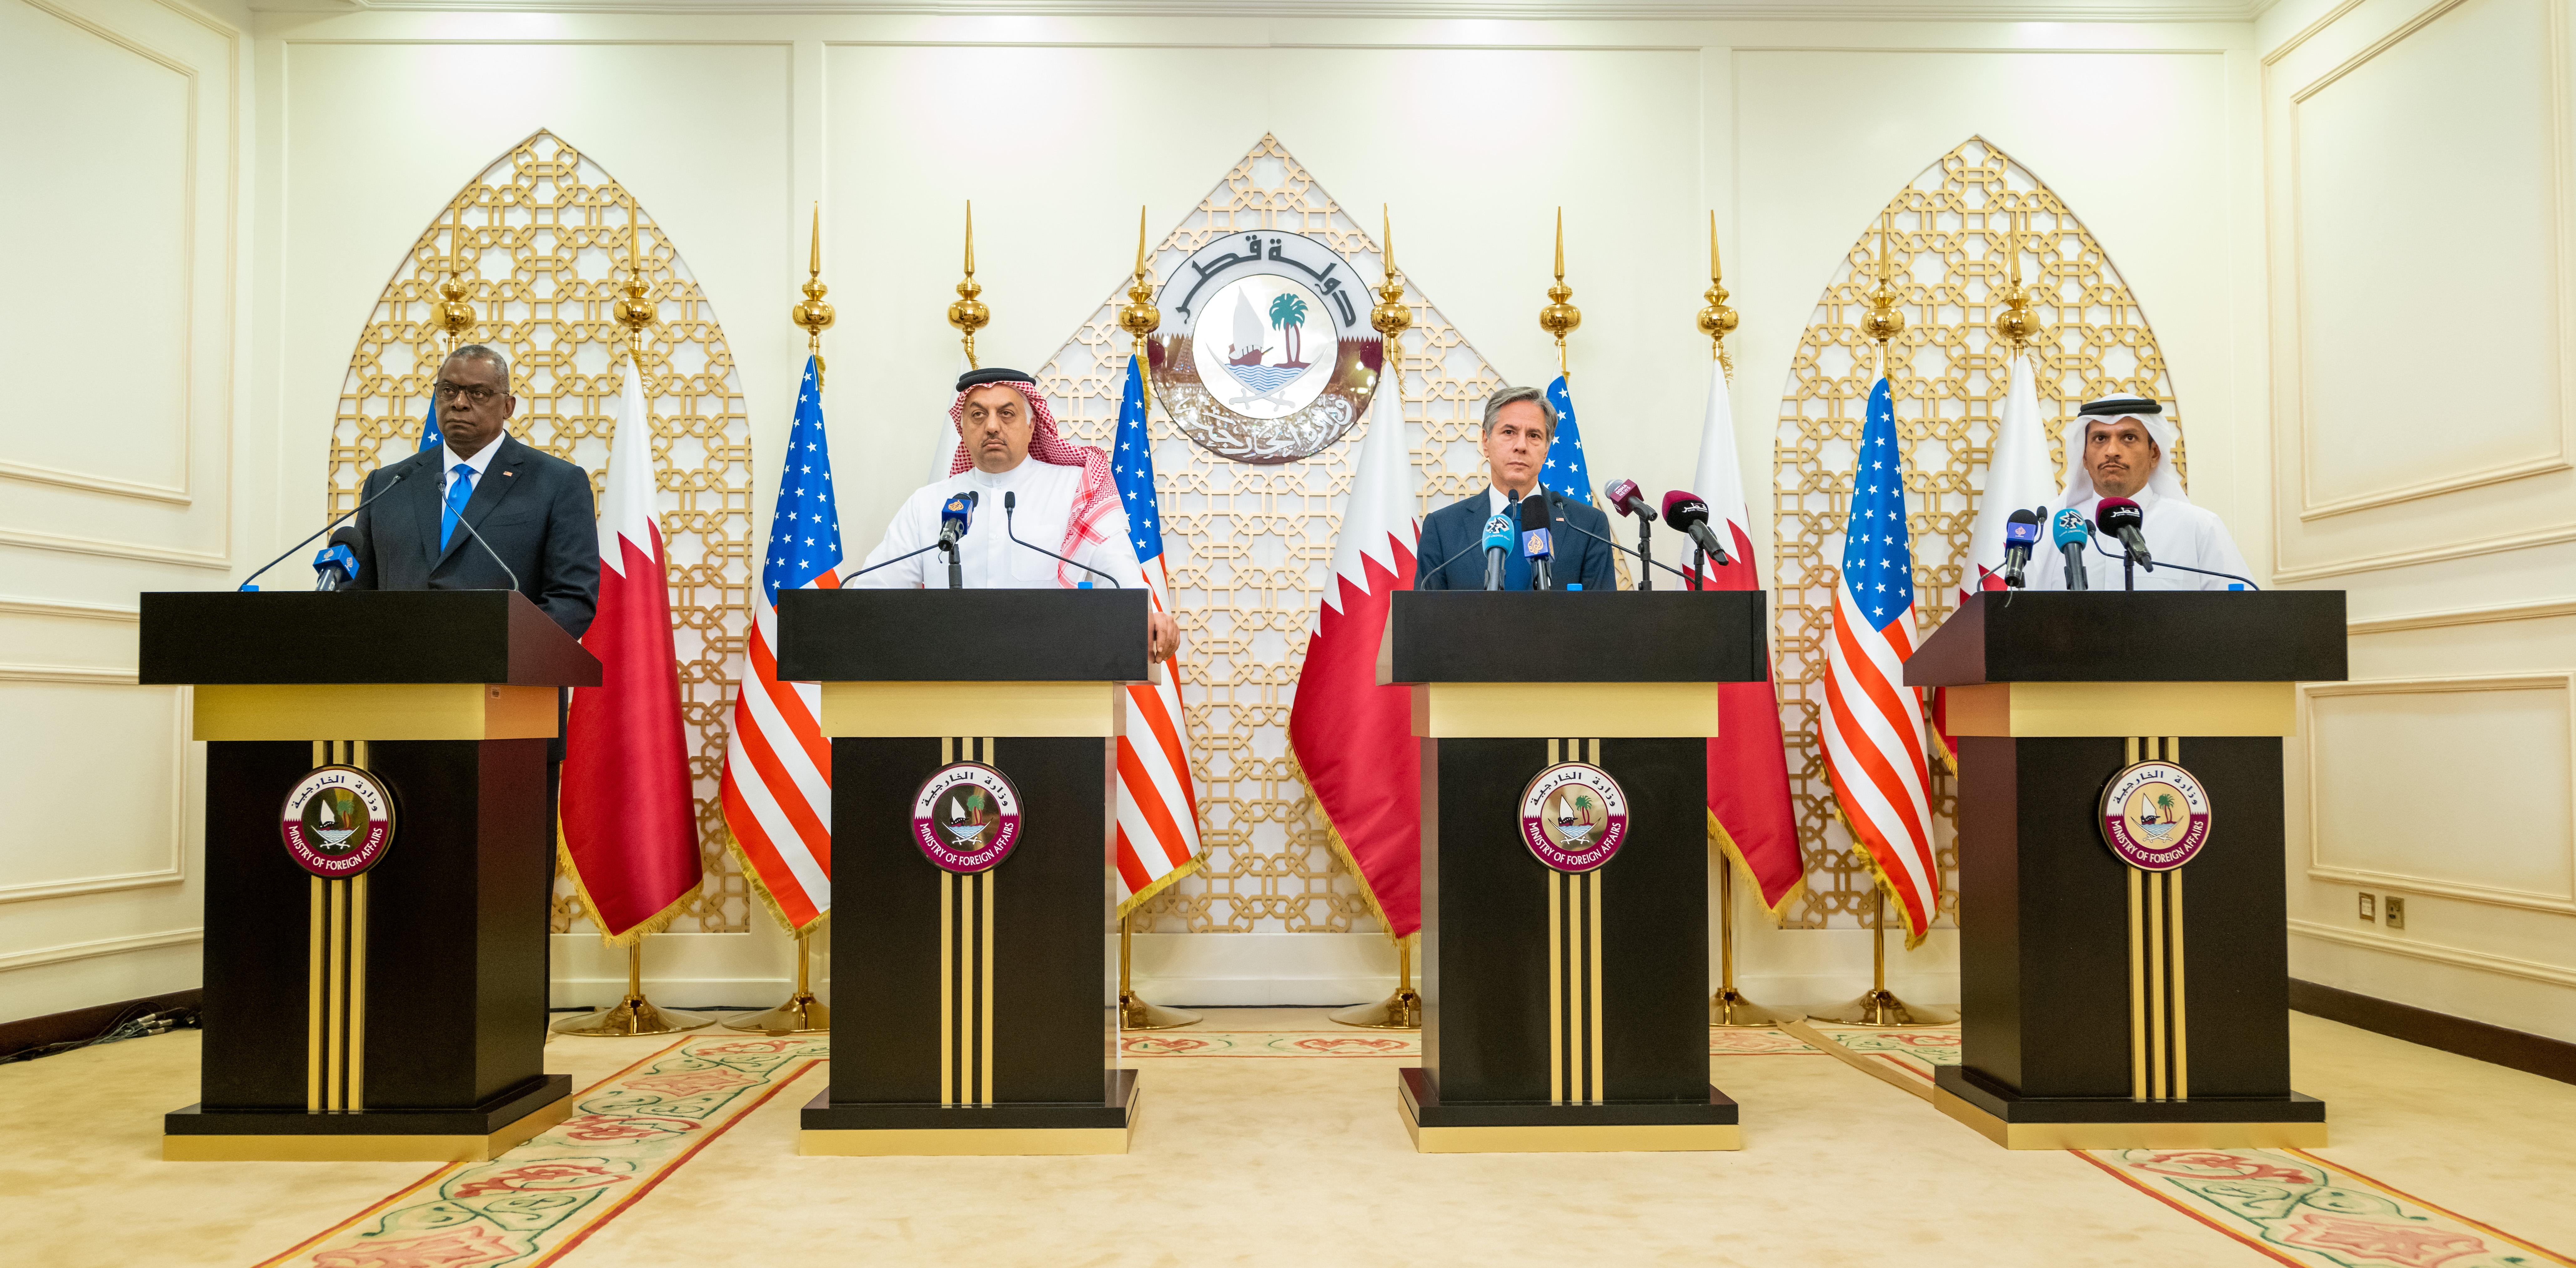 نائب رئيس مجلس الوزراء وزير الدولة لشؤون الدفاع: العلاقات بين قطر والولايات المتحدة قوية ومستمرون في التنسيق فيما يتعلق بأفغانستان